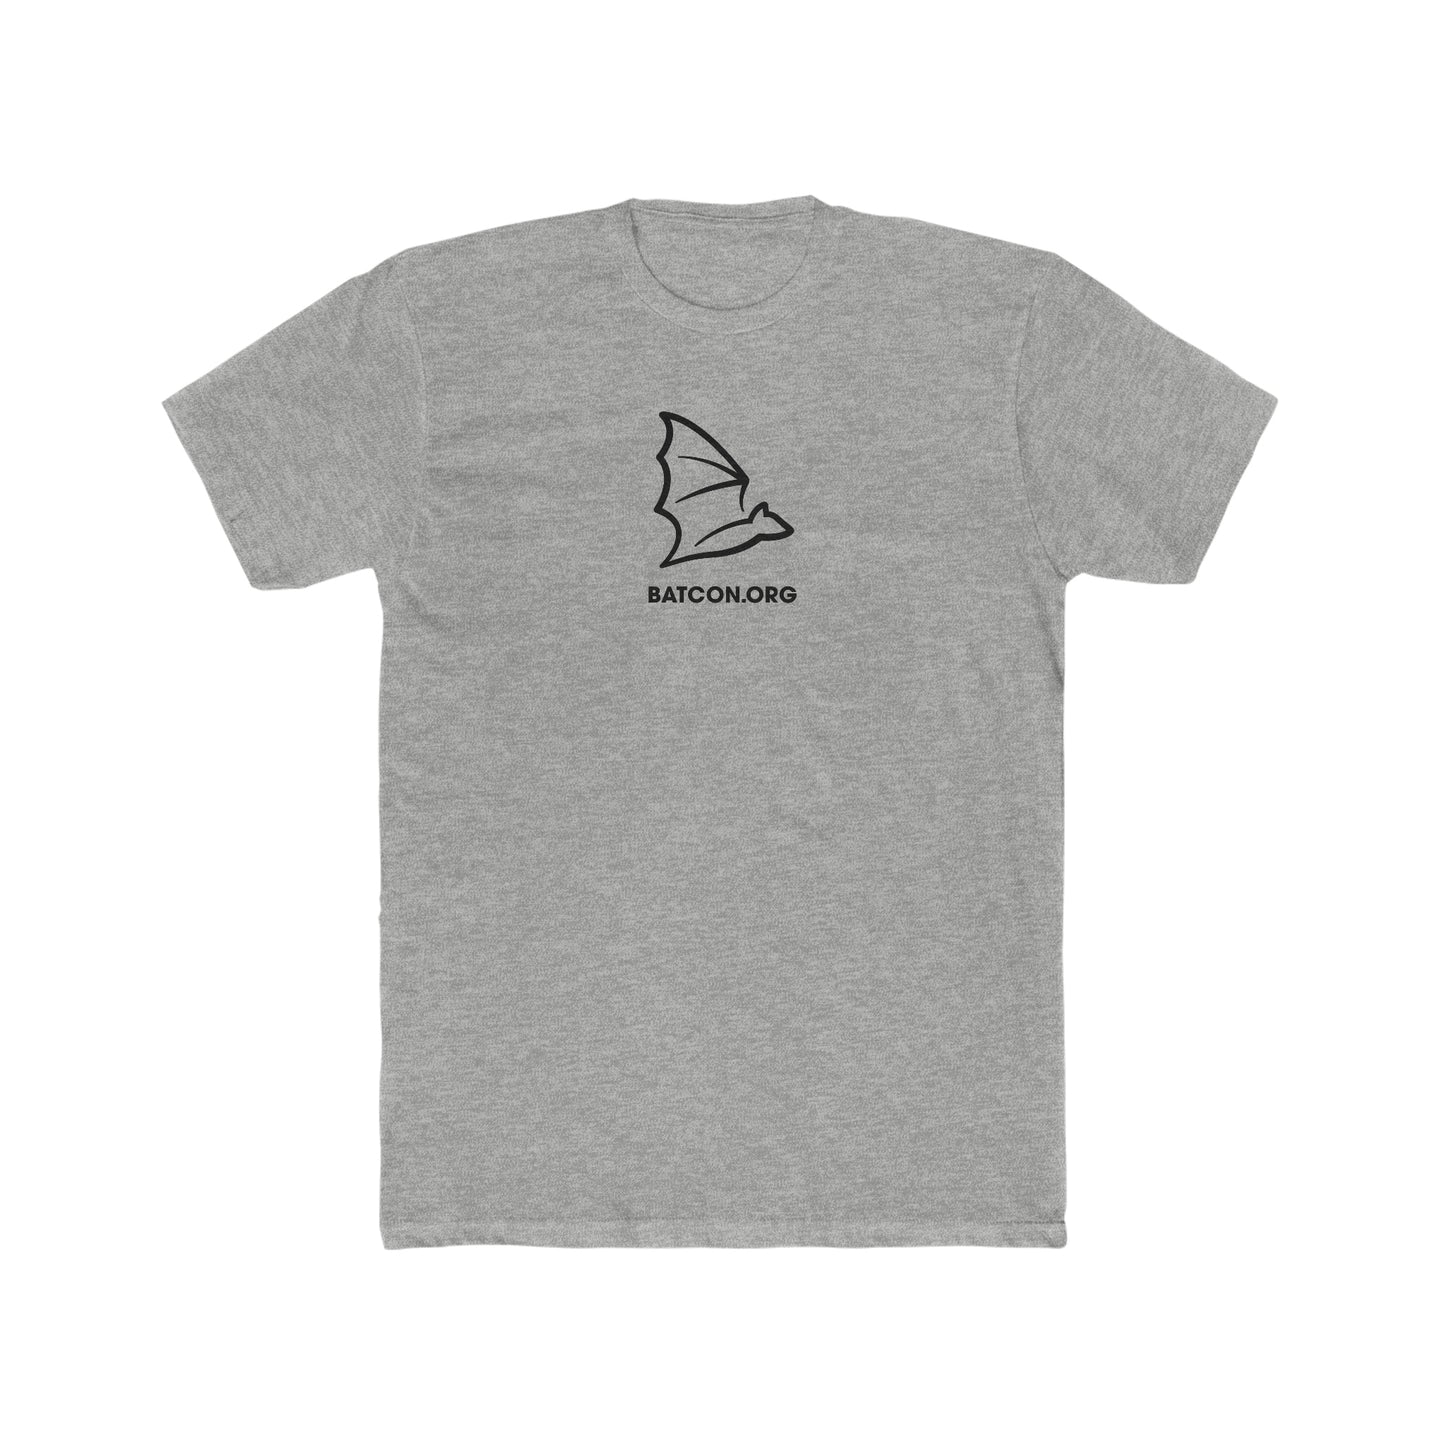 Murcielago Minimalista - Camiseta de algodón para hombre